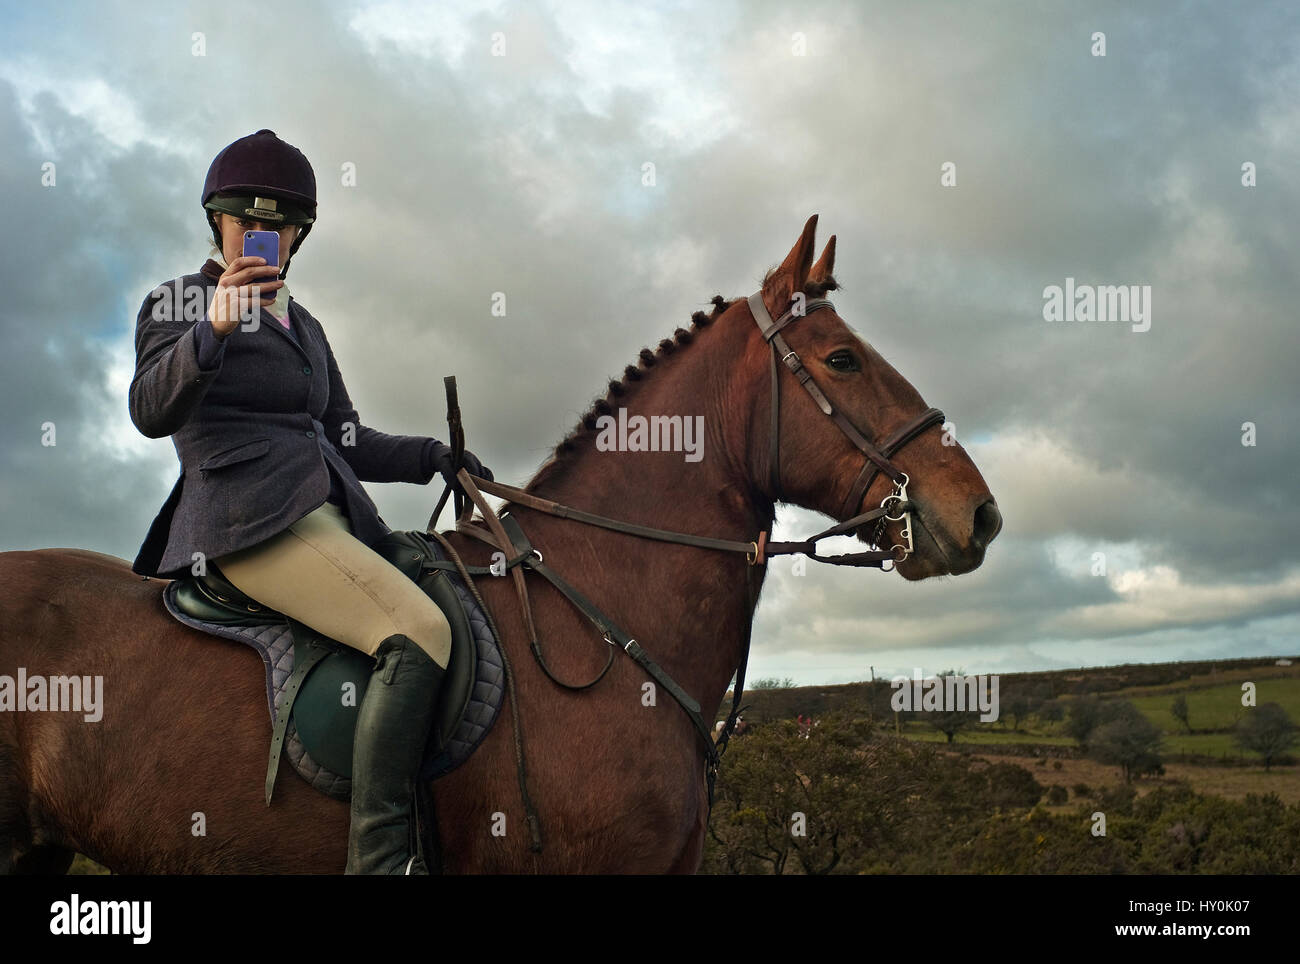 La chasse au renard femme sur le cheval prendre photo avec téléphone mobile Banque D'Images